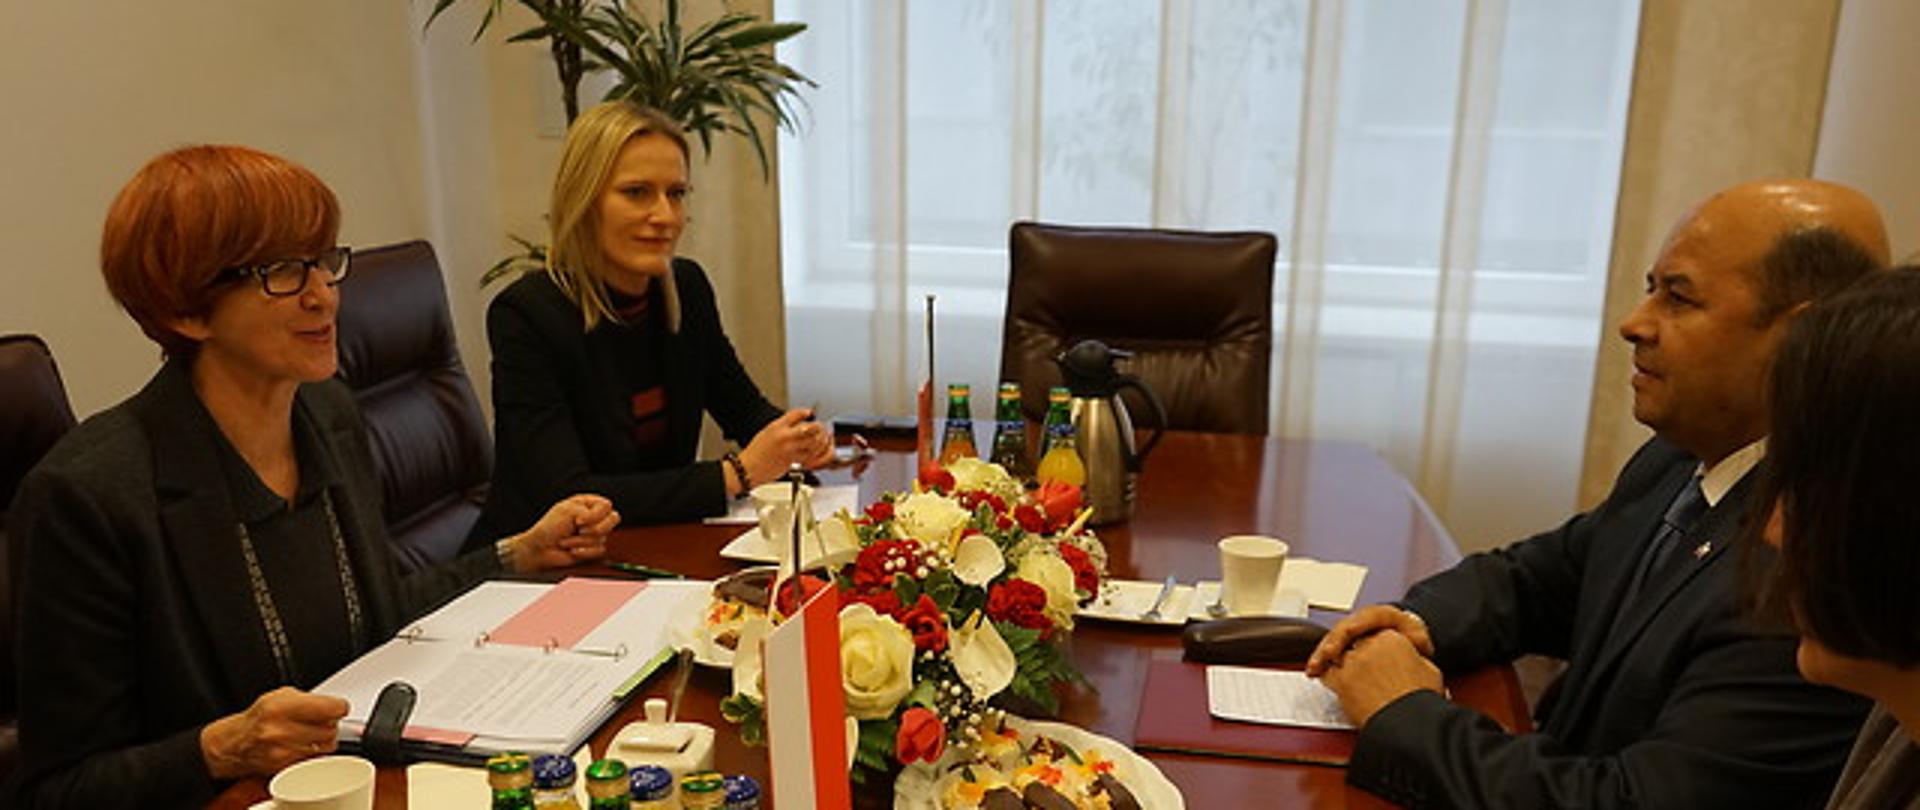 8 marca br.Minister E. Rafalska spotkała się z Panem Sghaierem Fatnassim, Ambasadorem Republiki Tunezyjskiej w Polsce. 